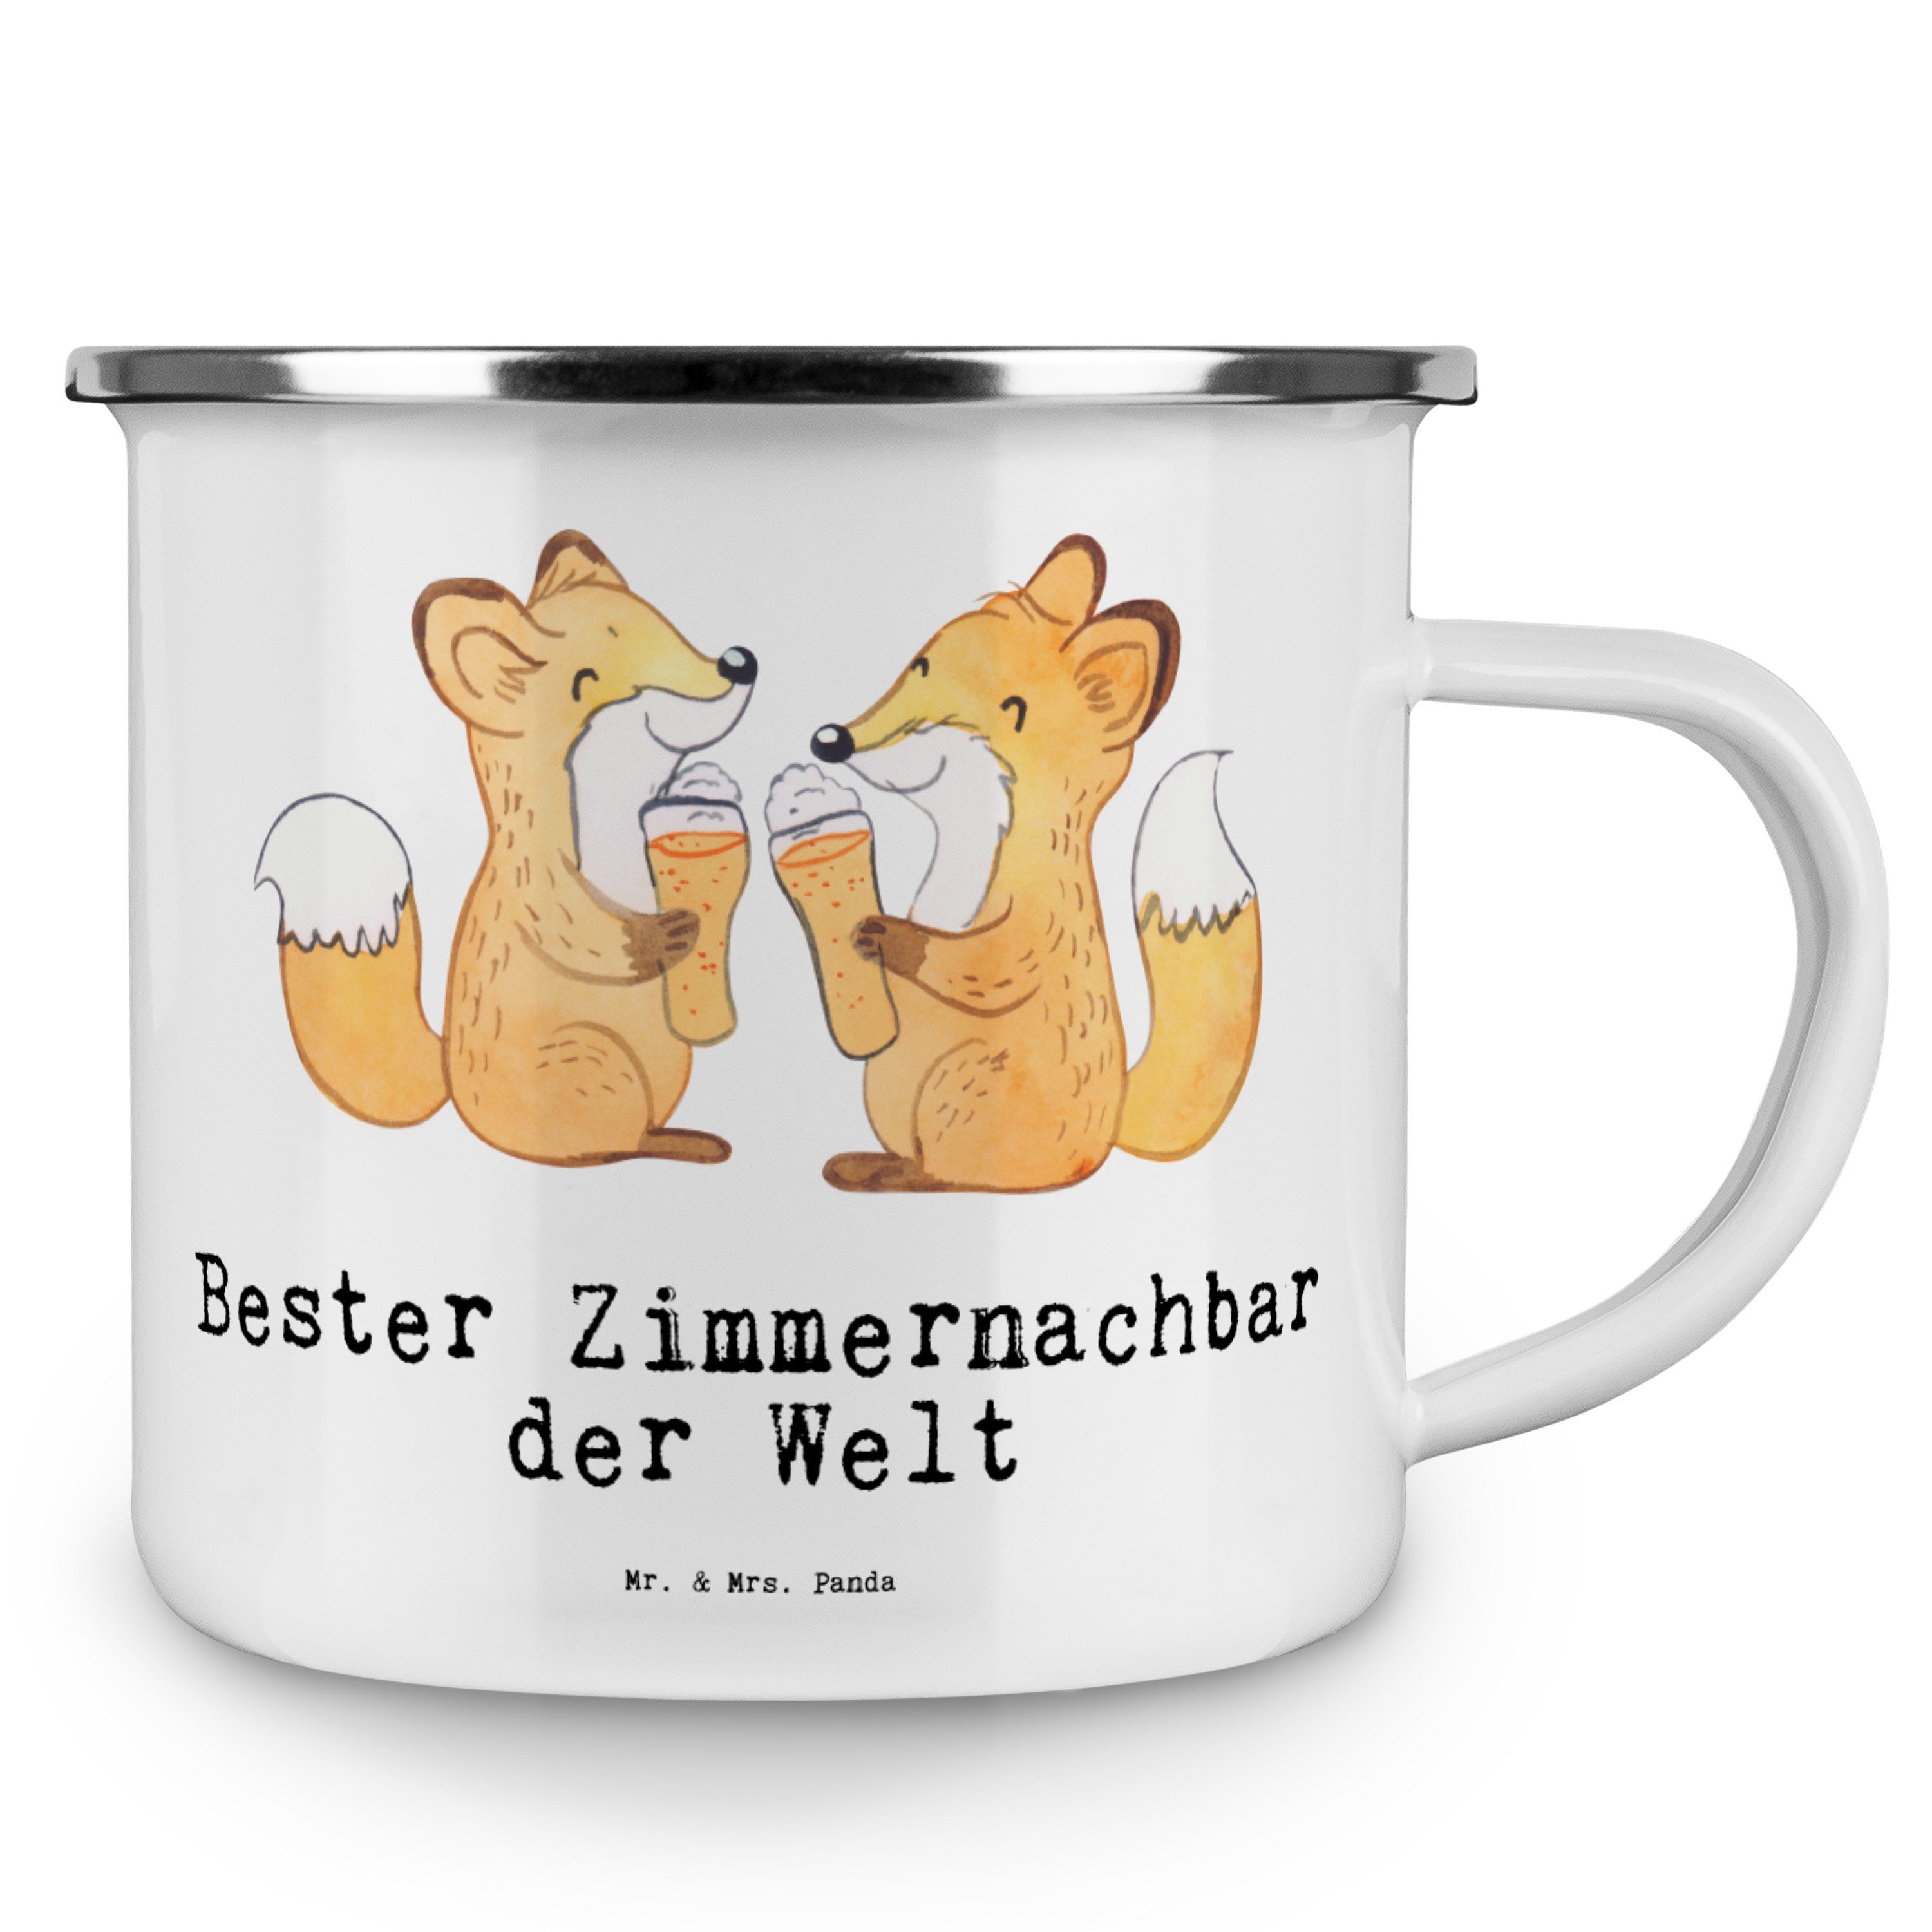 Emaille - & Becher Metalltasse, Geschenk, Bester - Panda E, Mrs. Welt der Weiß Mr. Fuchs Zimmernachbar